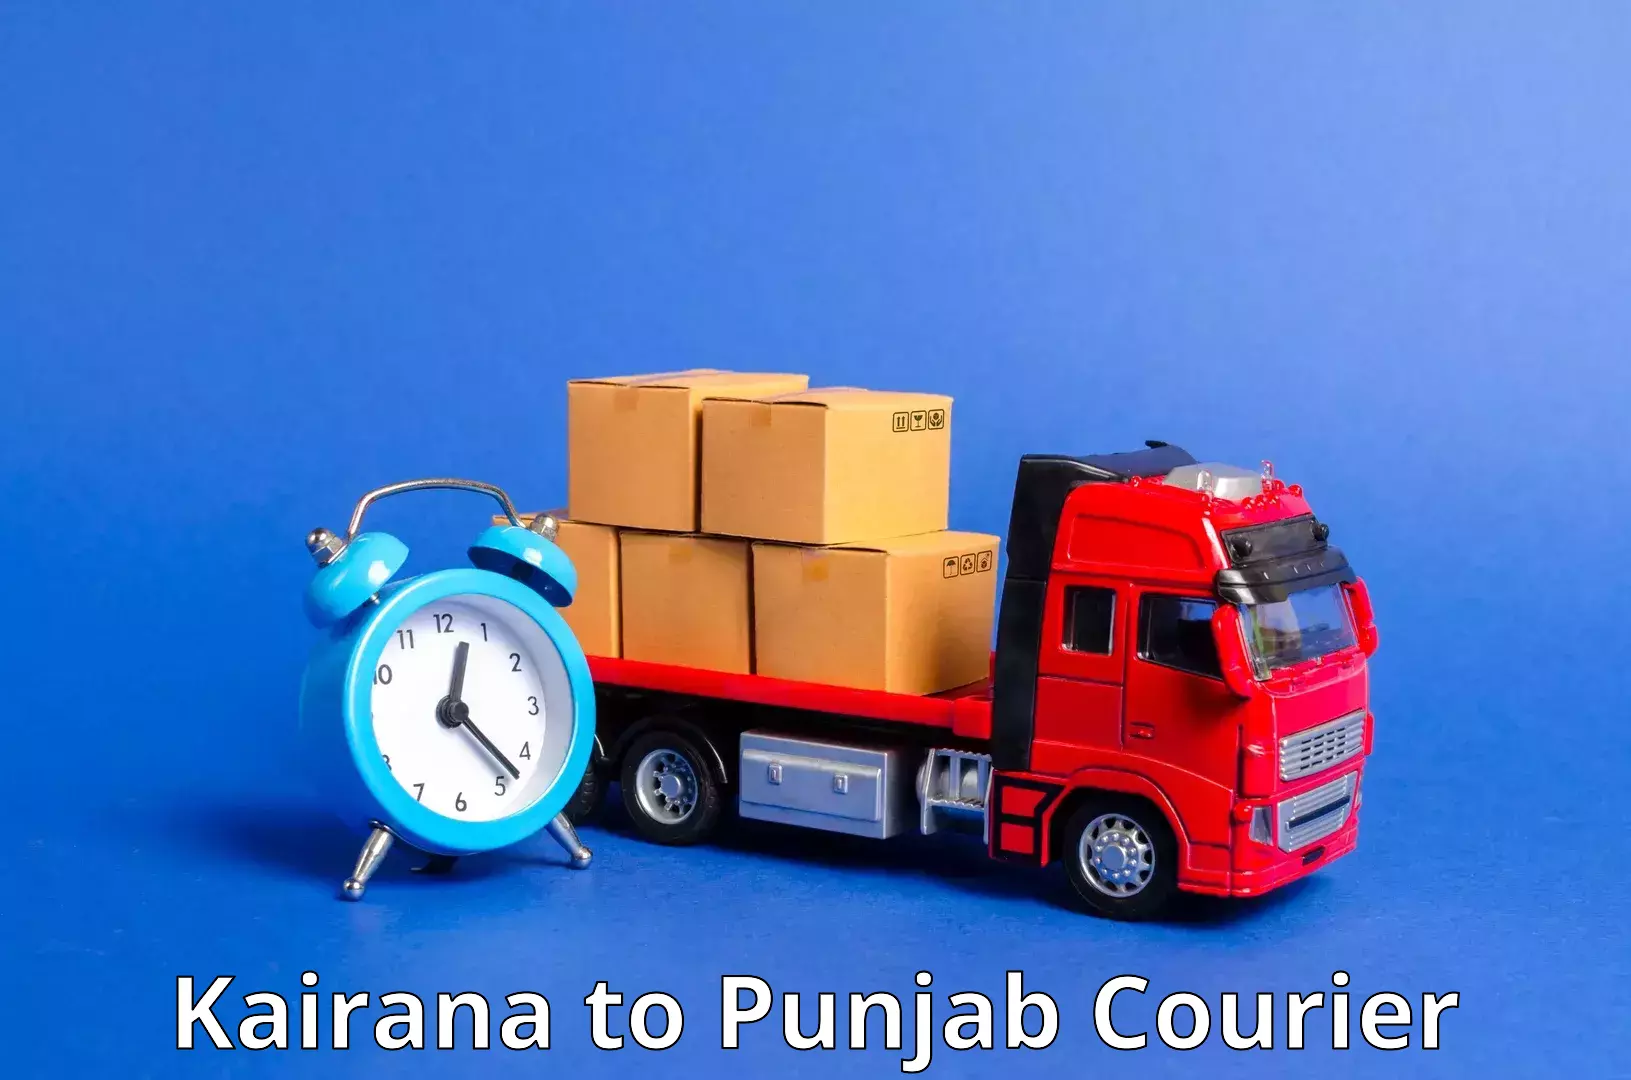 Efficient parcel service Kairana to Punjab